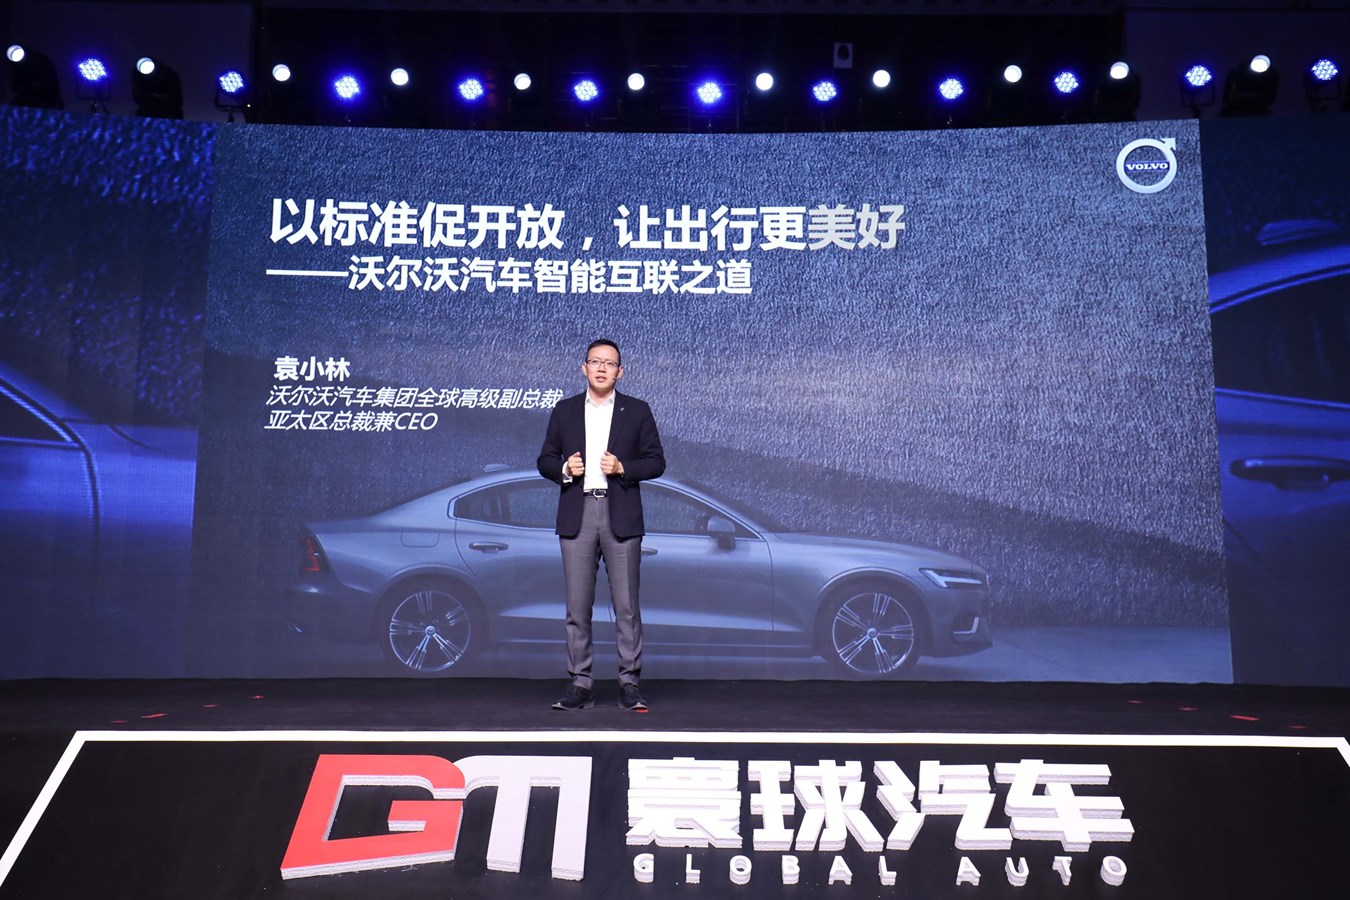 沃尔沃汽车集团全球高级副总裁、亚太区总裁兼CEO袁小林发表主题演讲